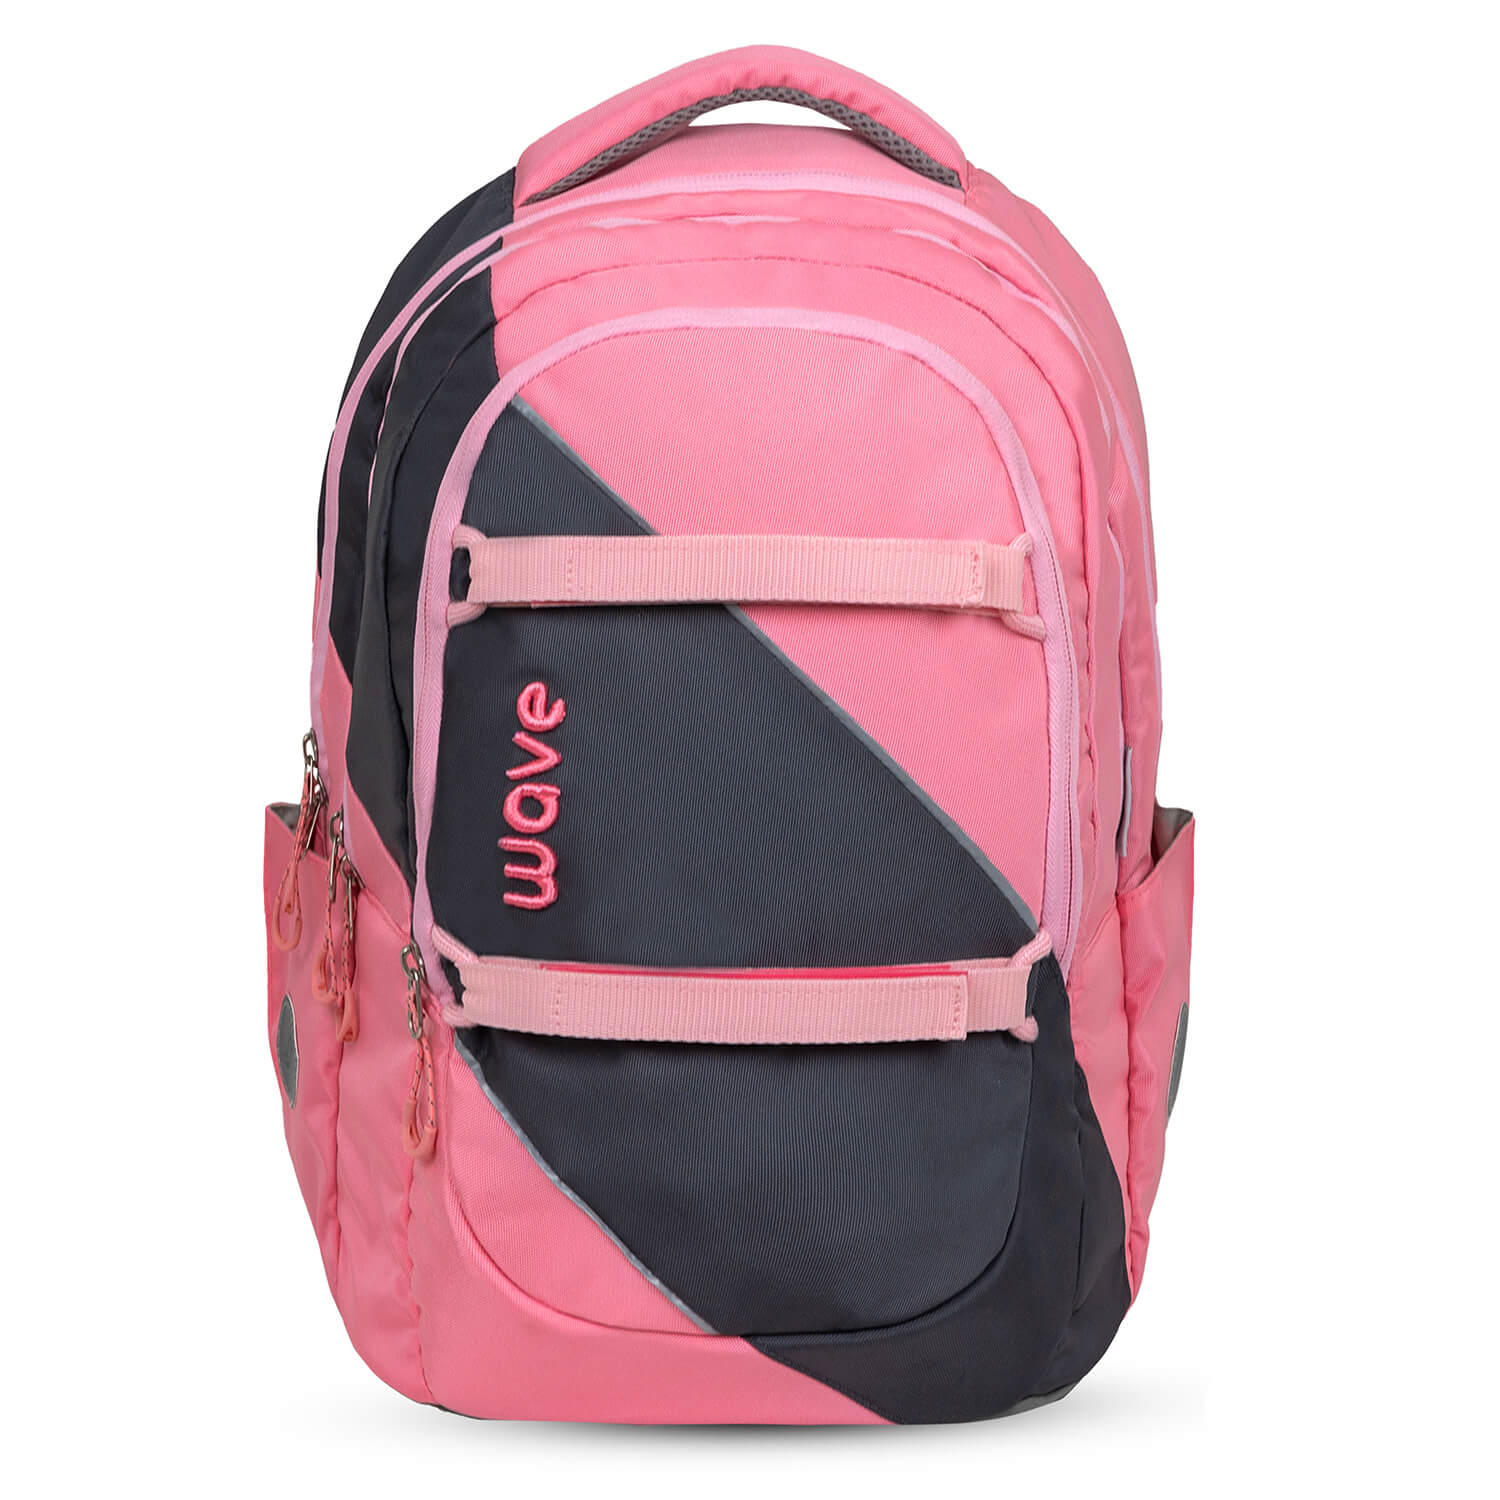 Wave Prime Pinky school backpack